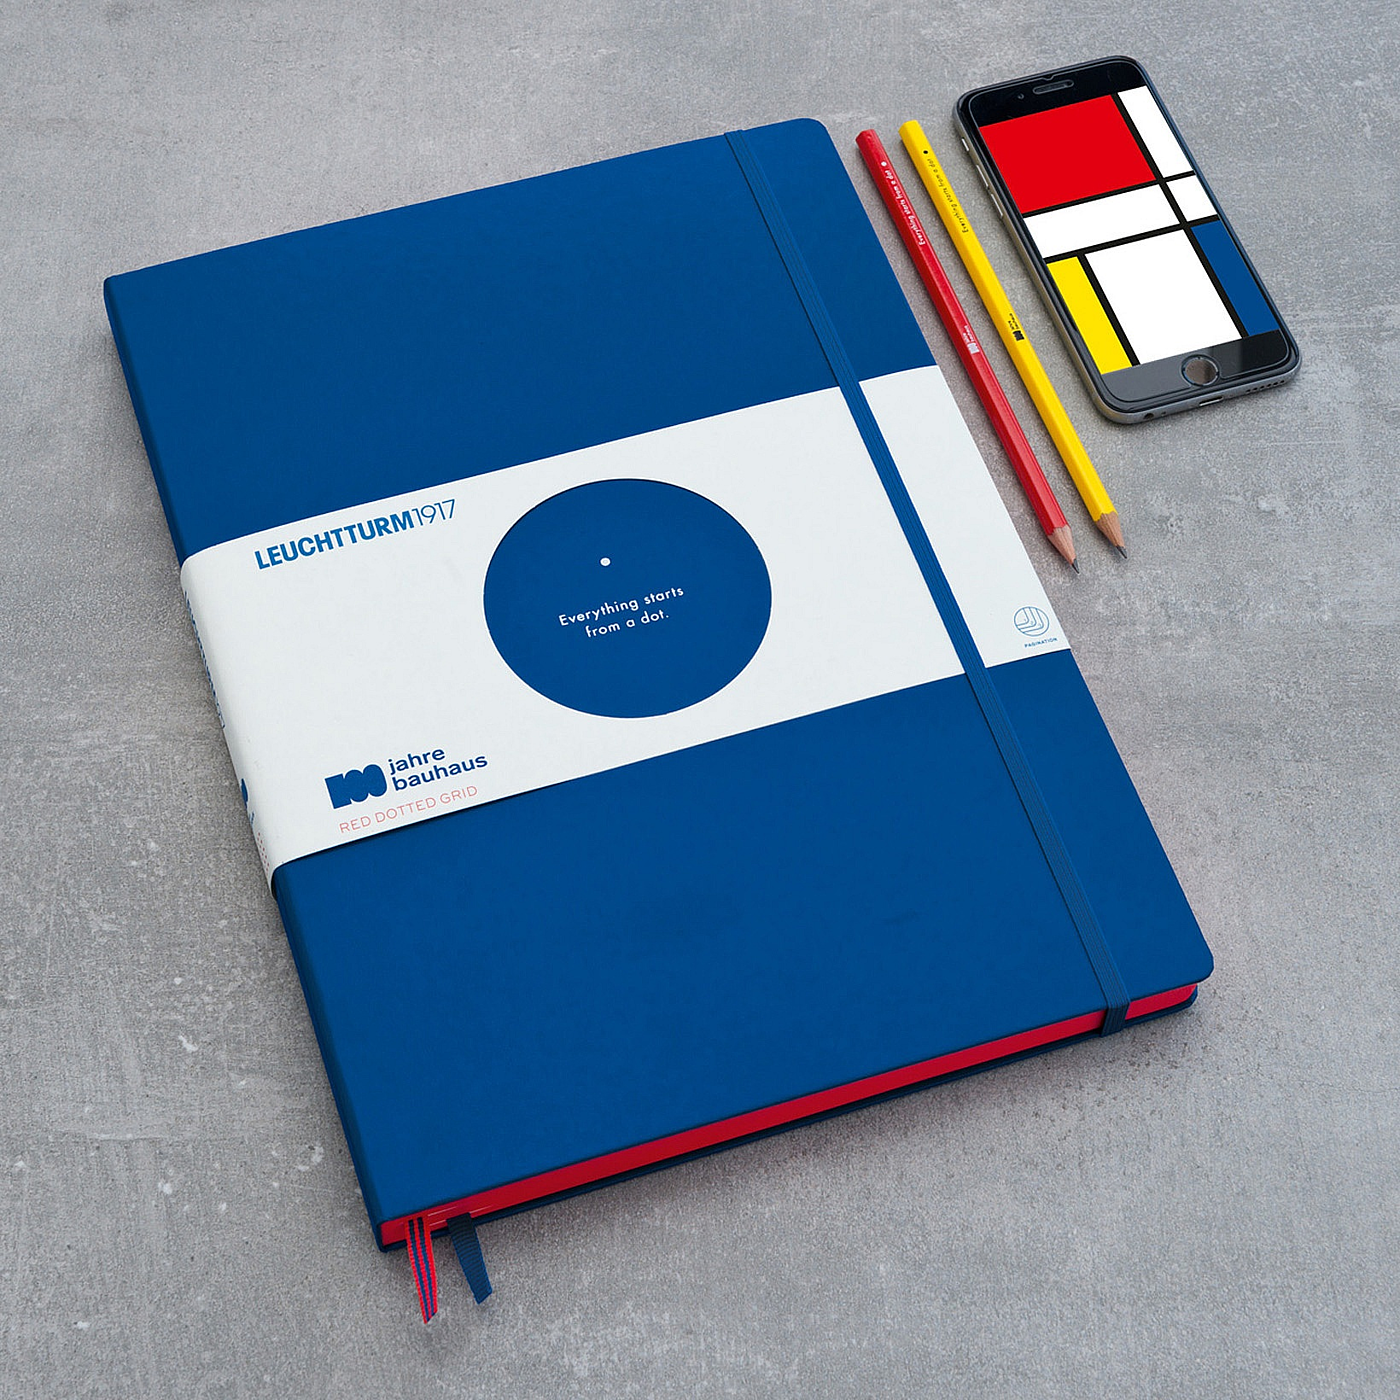 LEUCHTTURM1917，100 Years of Bauhaus，笔记本，特別版，文具，2019红点产品设计大奖，reddot，